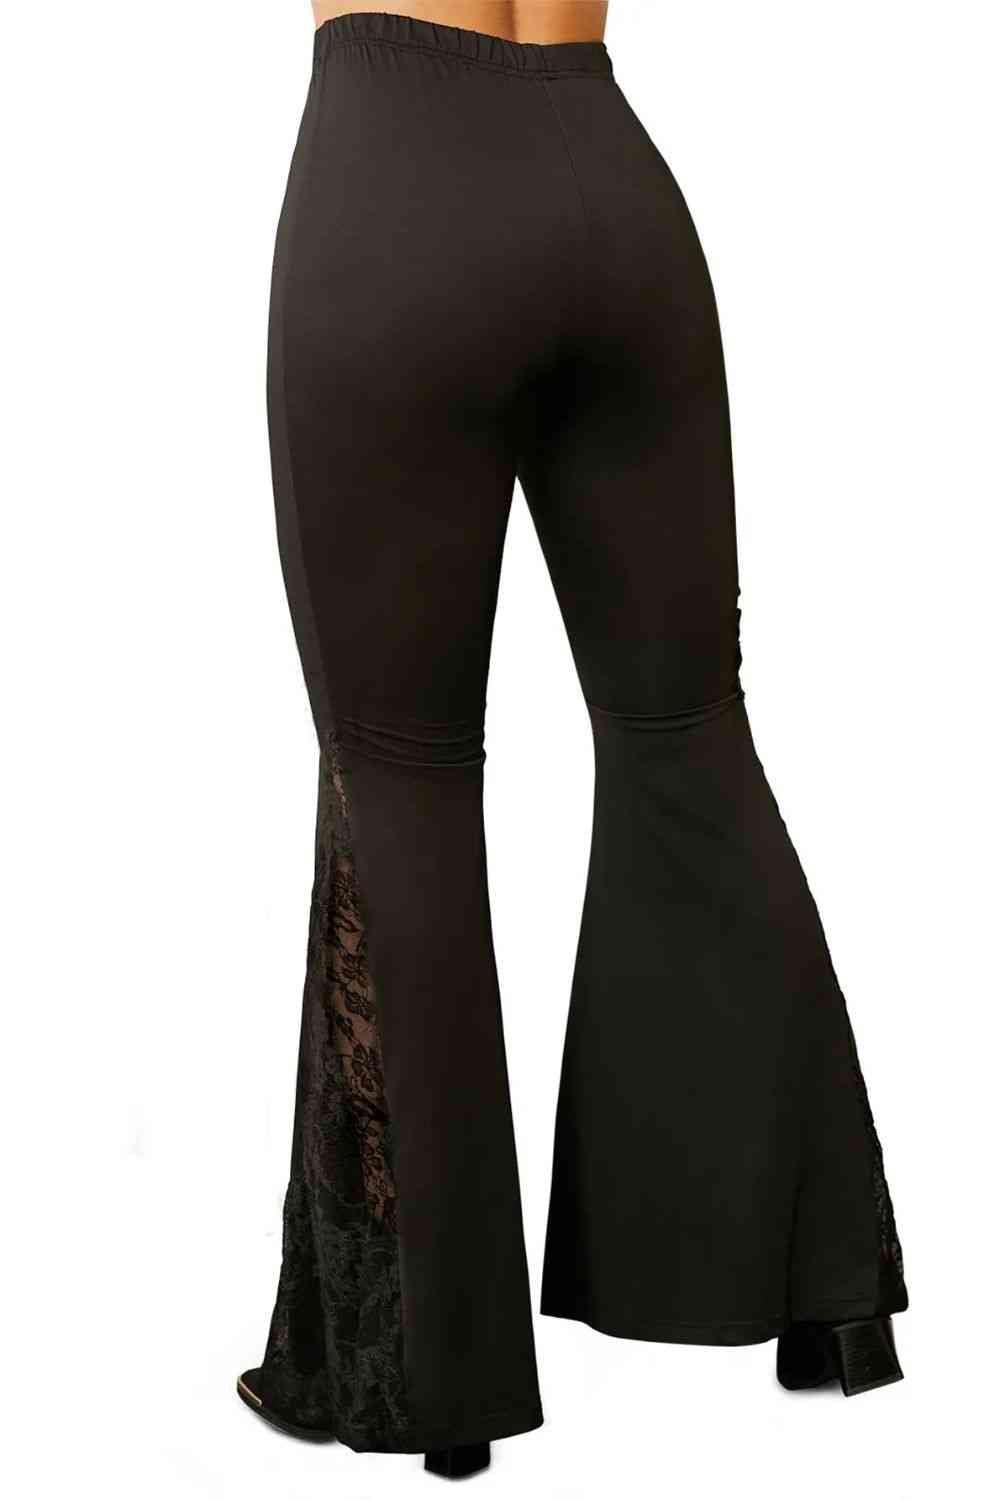 Simple Sophistication Black Lace Flare Pants - MXSTUDIO.COM